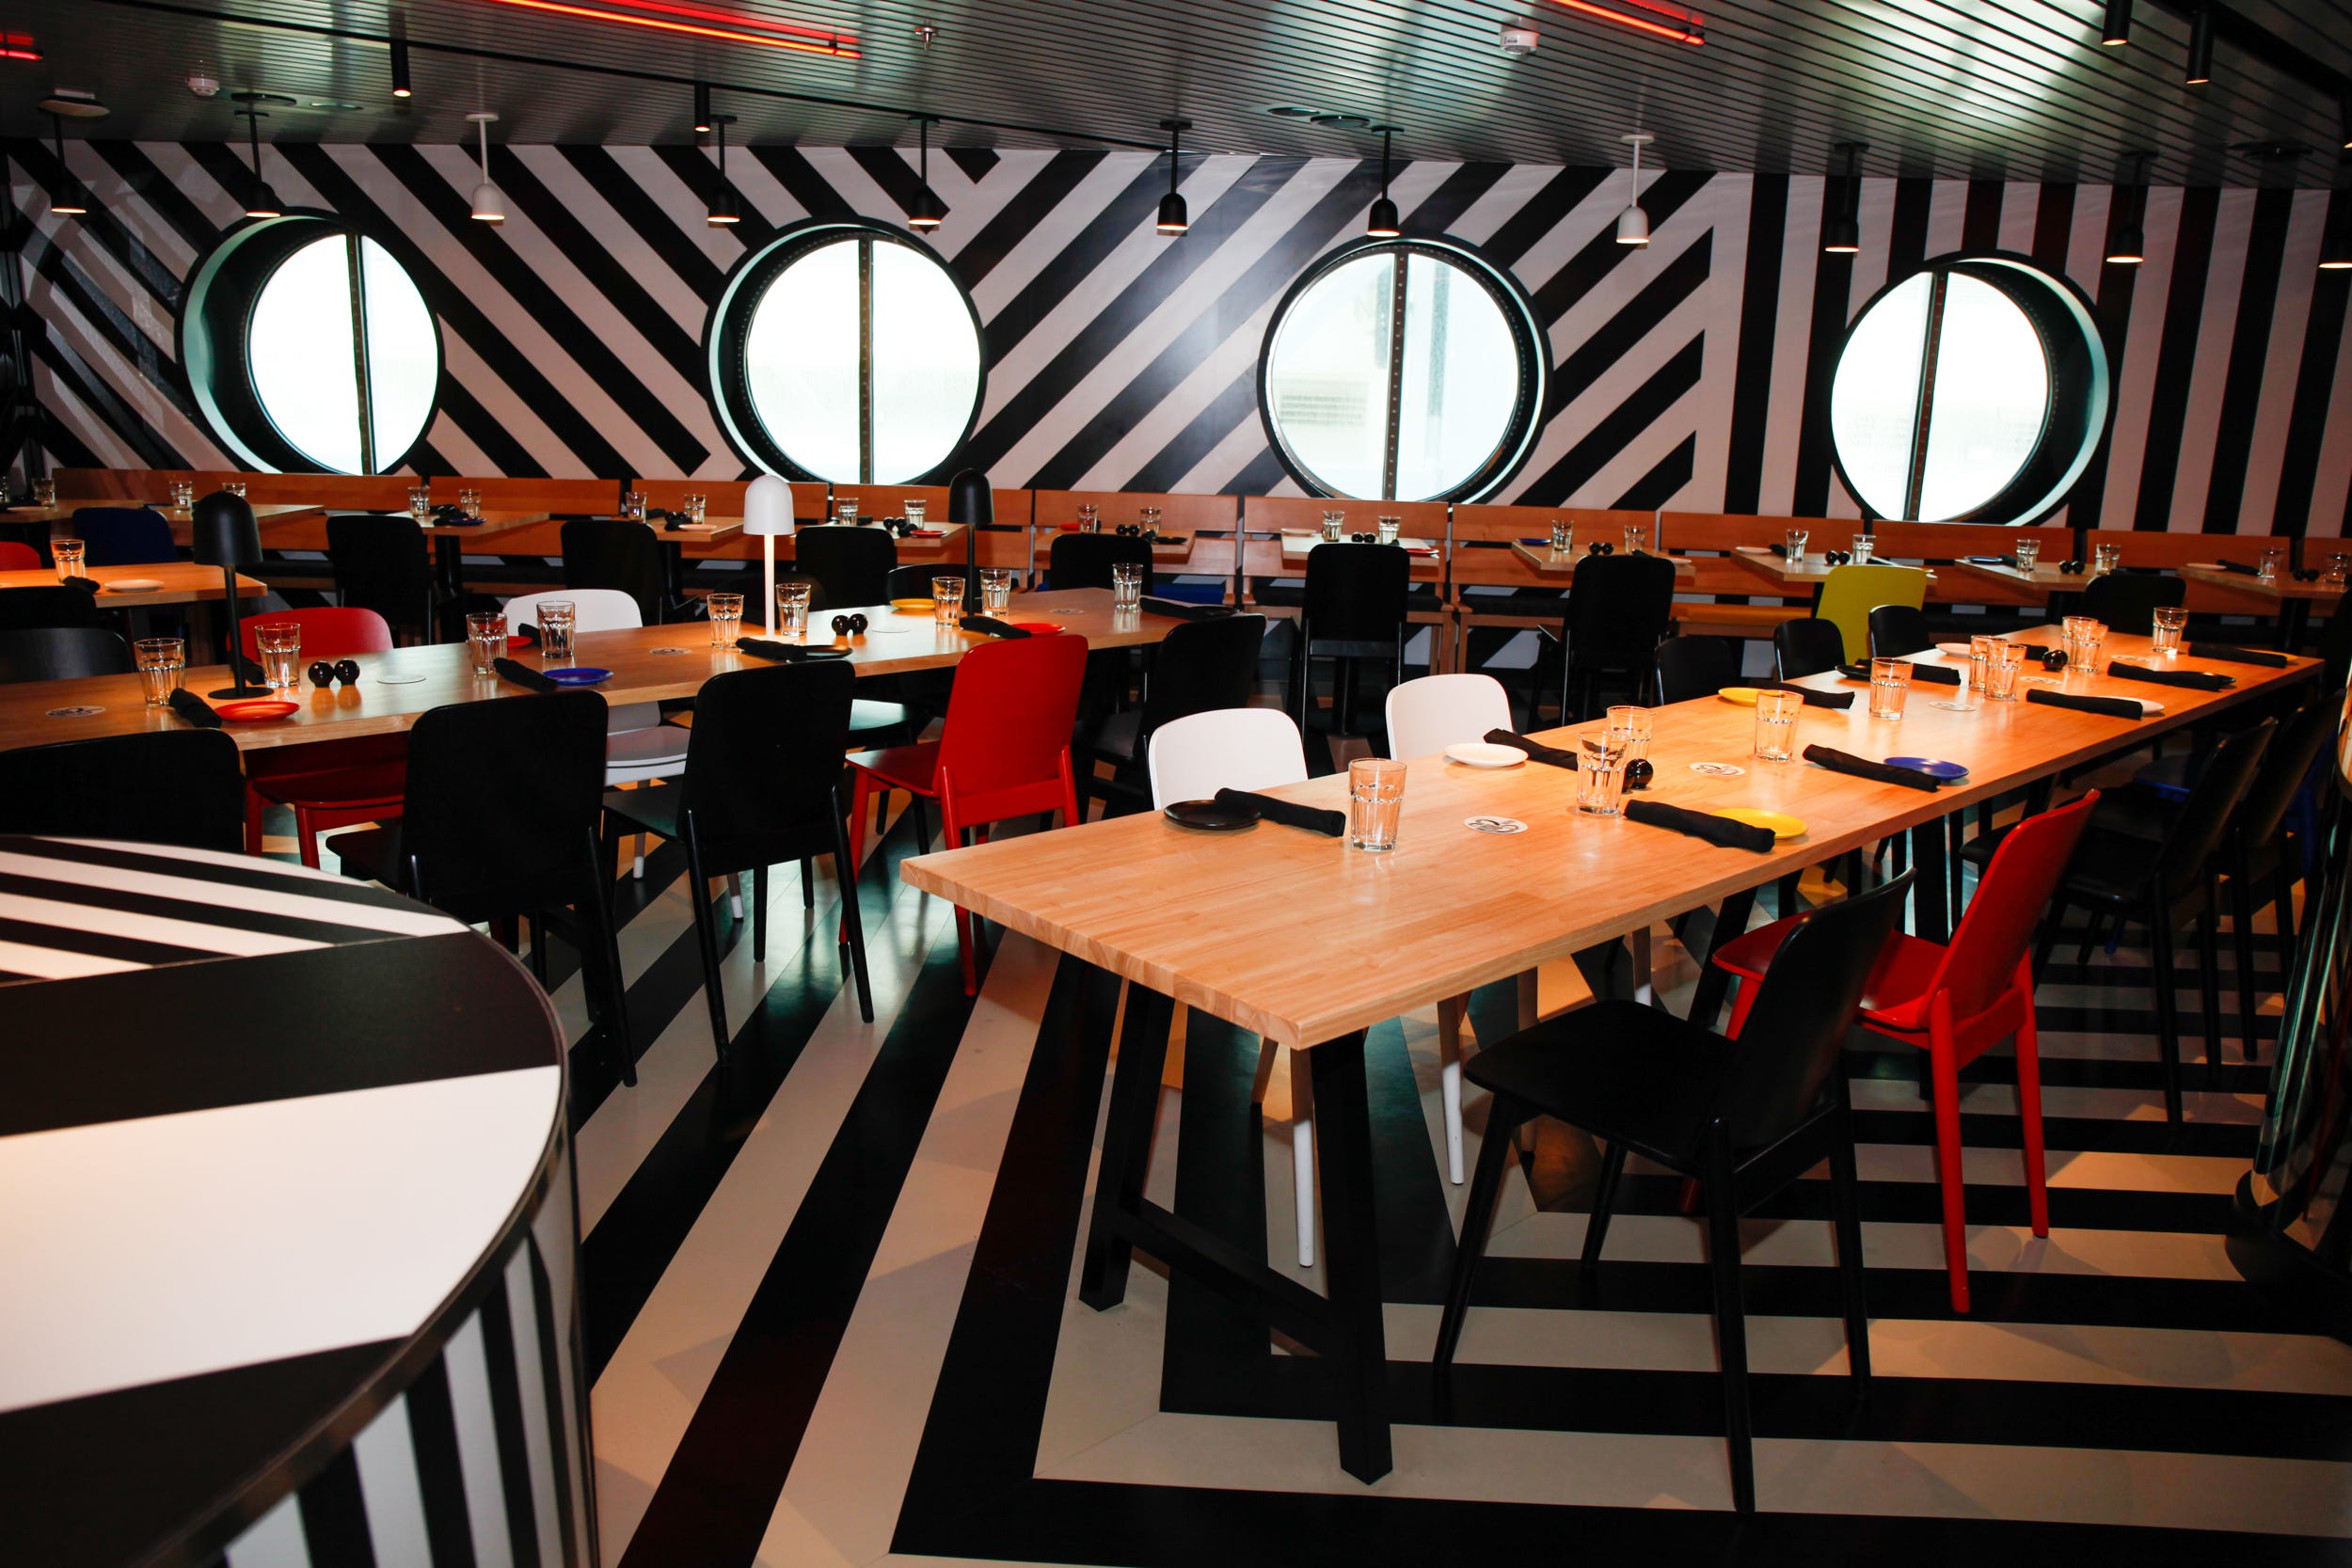 Das Restaurant Razzle Dazzle mit kräftigen weißen und schwarzen Streifen an Wand und Boden